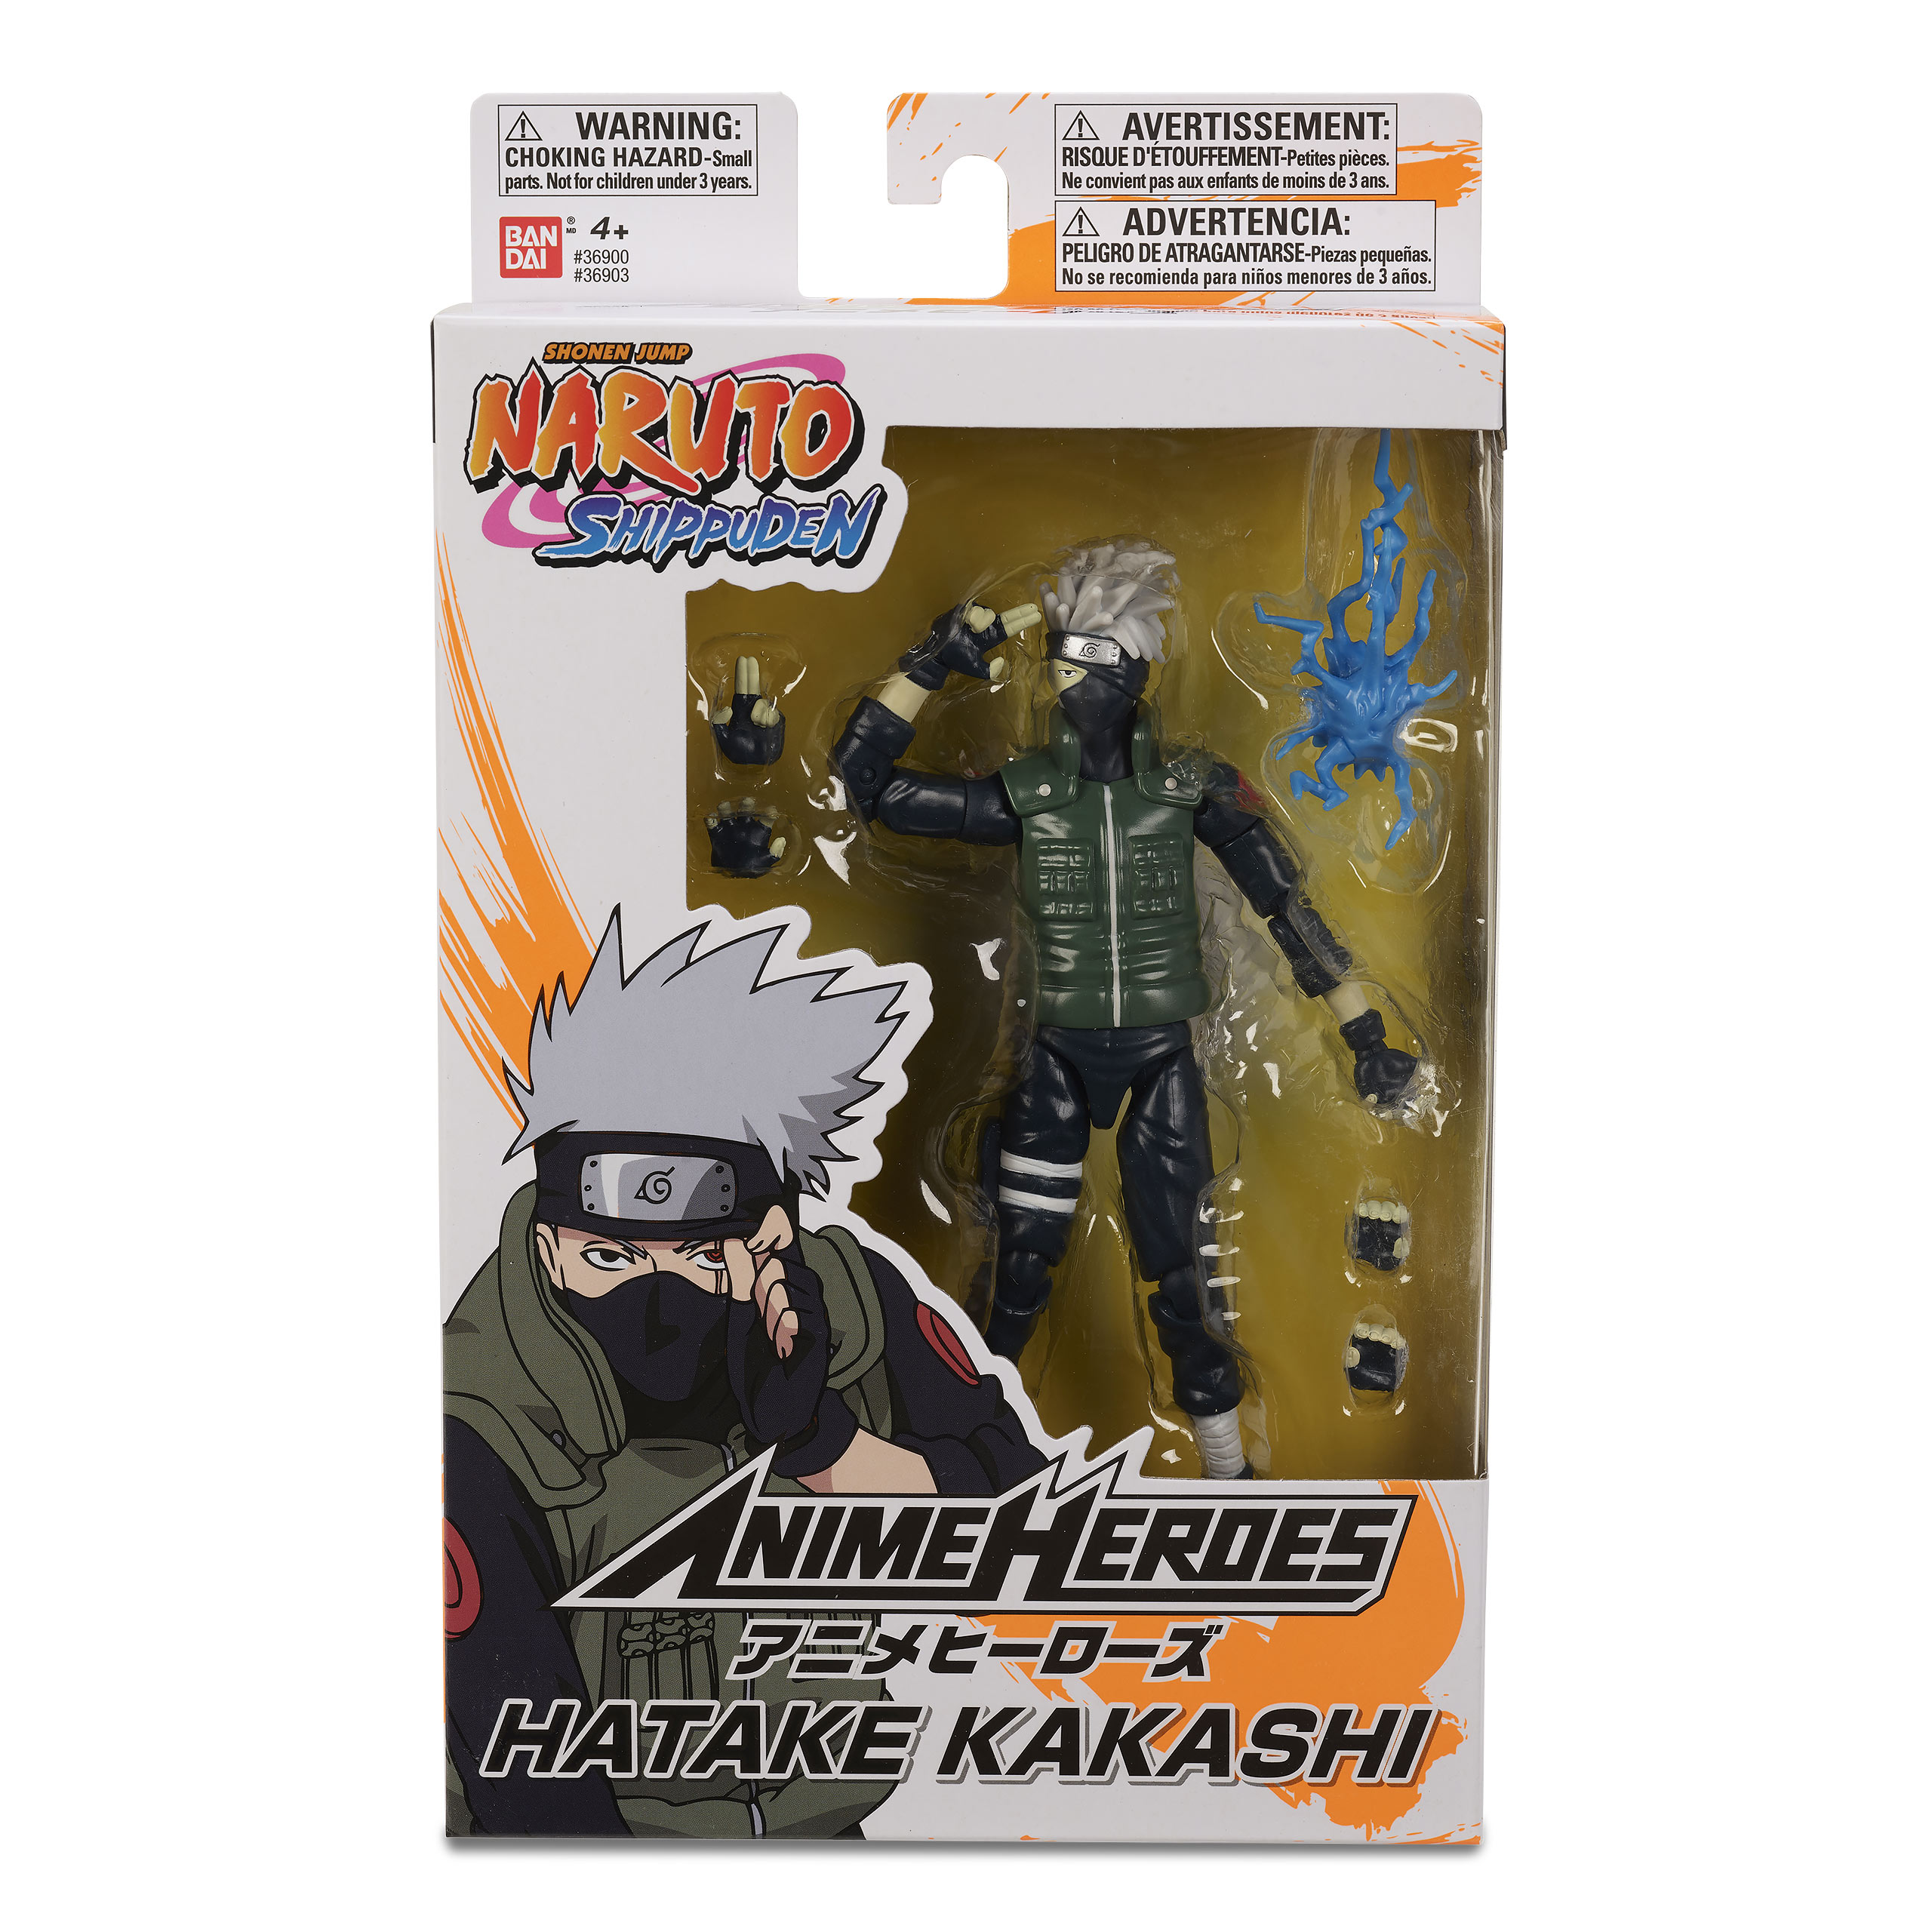 Naruto Shippuden - Hatake Kakashi Anime Heroes Actionfigur